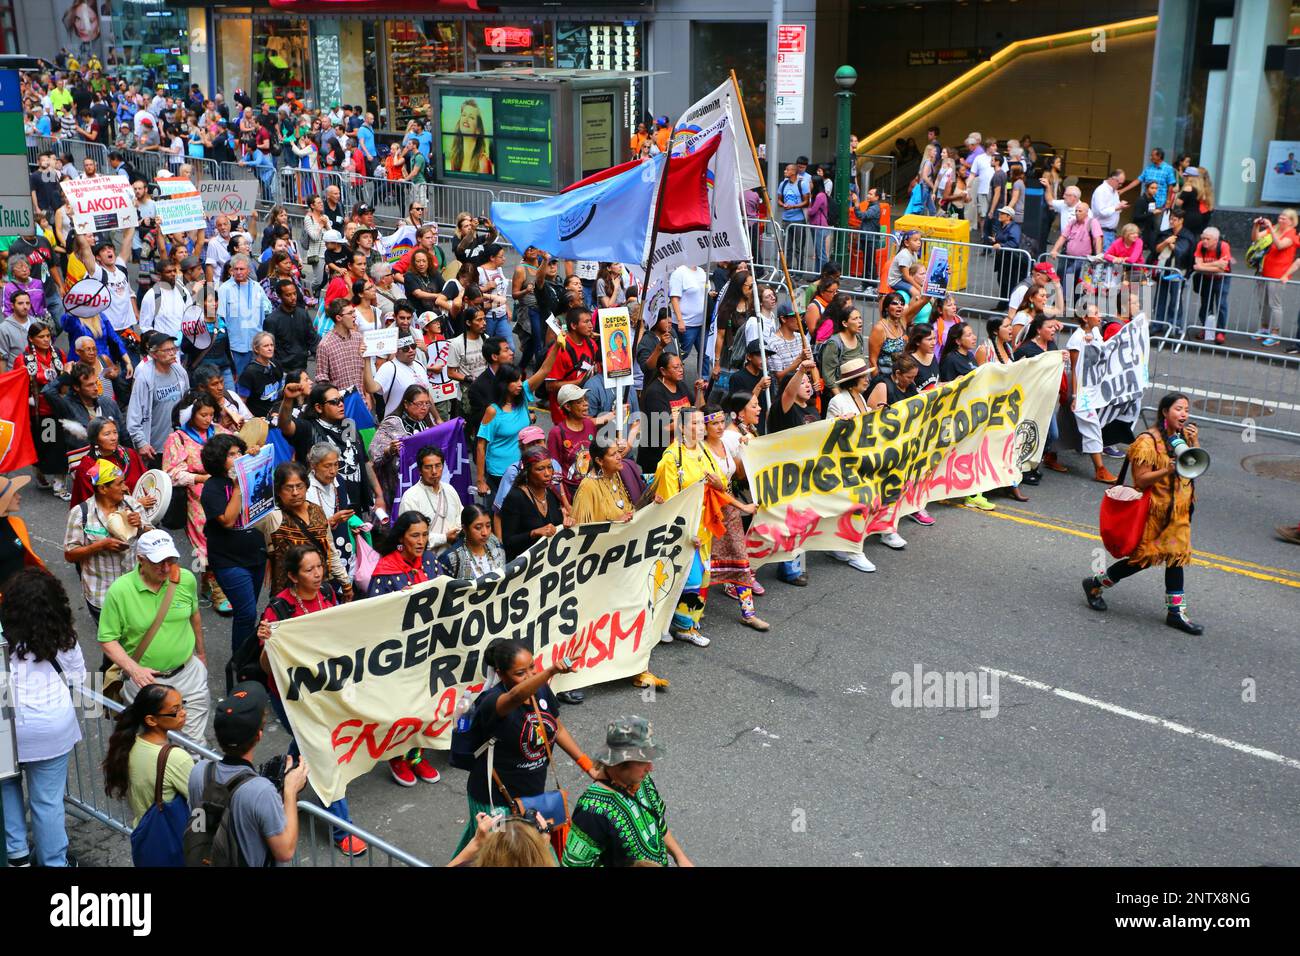 21. September 2014, New York. Die Rechte der indigenen Völker hängen mit den Bannern "Ende des Kolonialismus" im "People's Climate March" zusammen Stockfoto